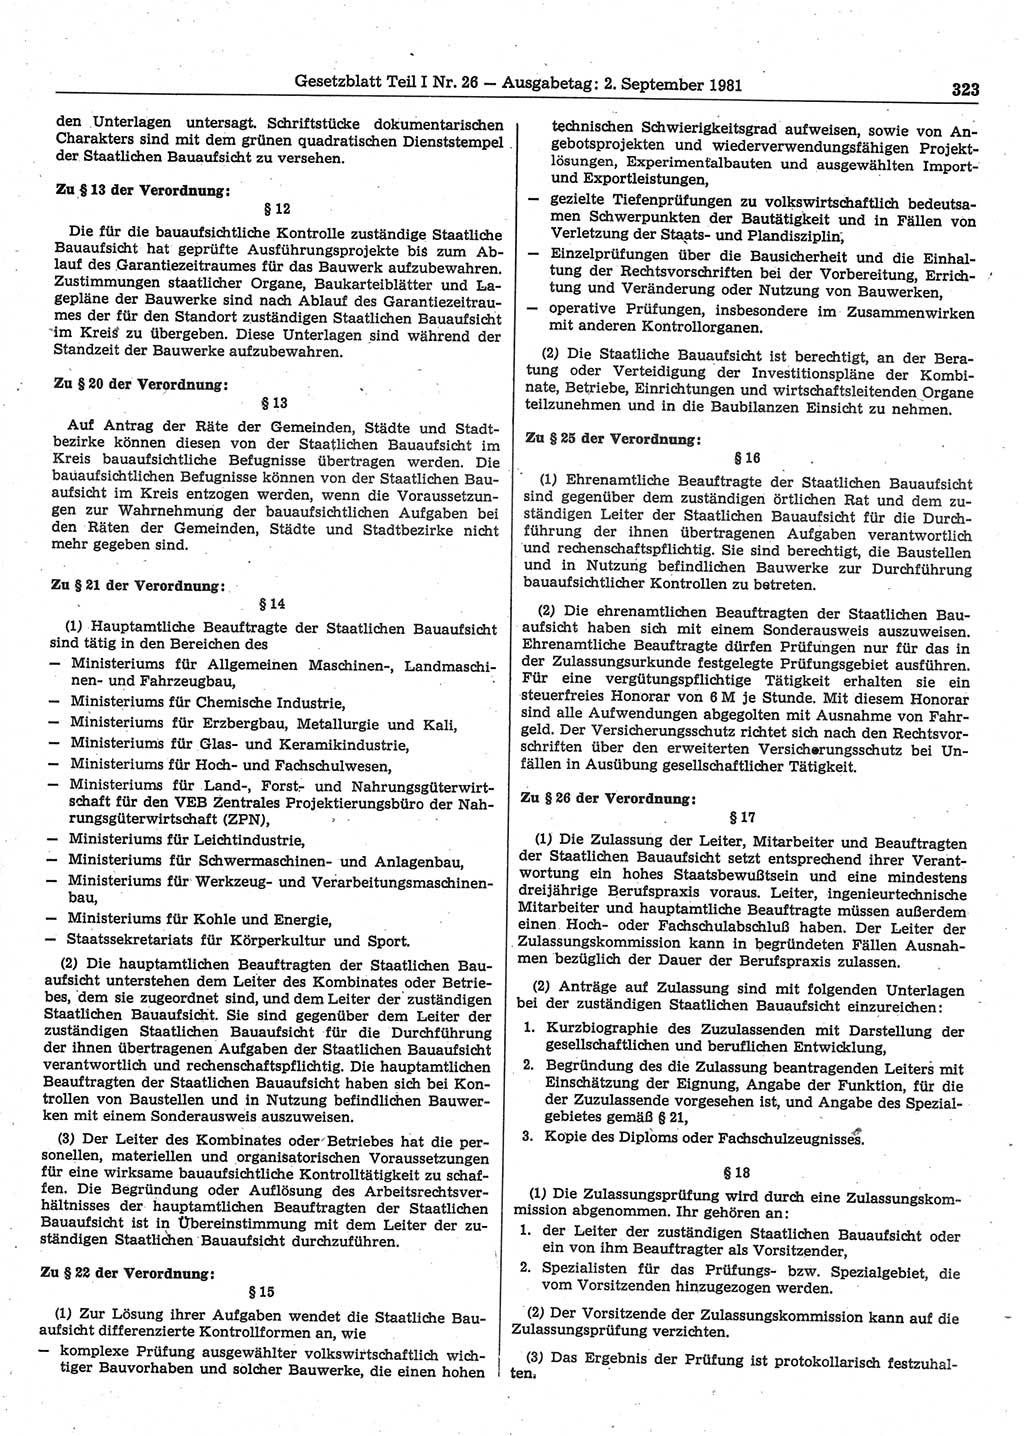 Gesetzblatt (GBl.) der Deutschen Demokratischen Republik (DDR) Teil Ⅰ 1981, Seite 323 (GBl. DDR Ⅰ 1981, S. 323)